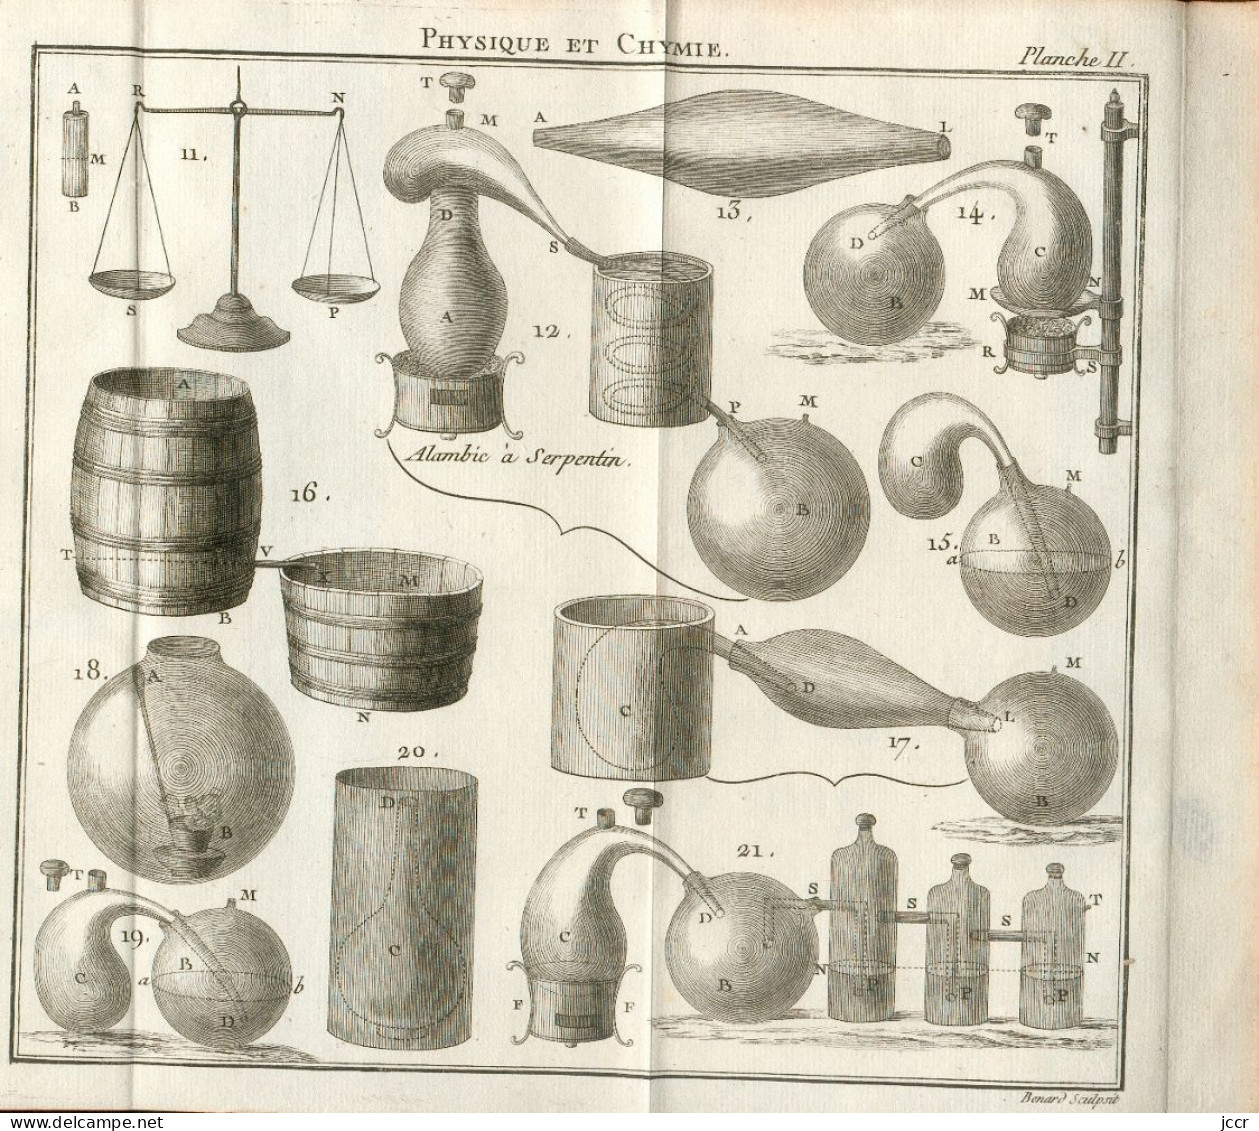 Théorie des Nouvelles Découvertes en genre de Physique et de Chymie par M. l'Abbé Para - 10 planches dépliantes - 1786